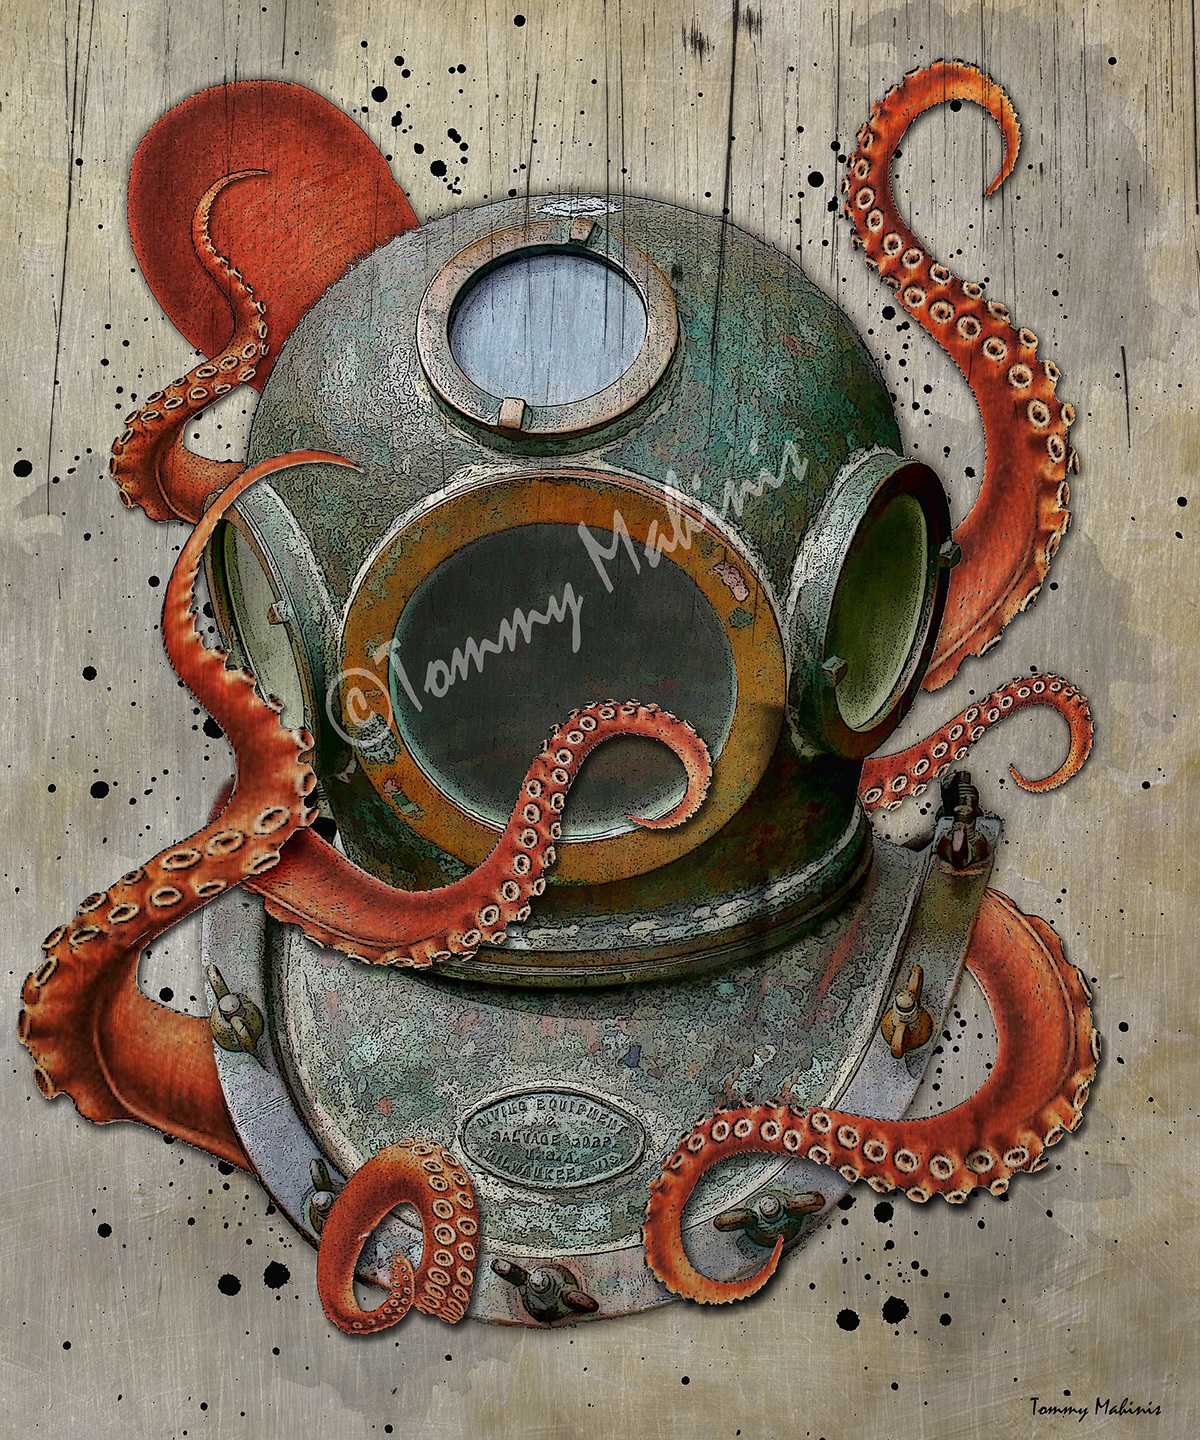 Sponge Diver Helmet octopus hard hat diving